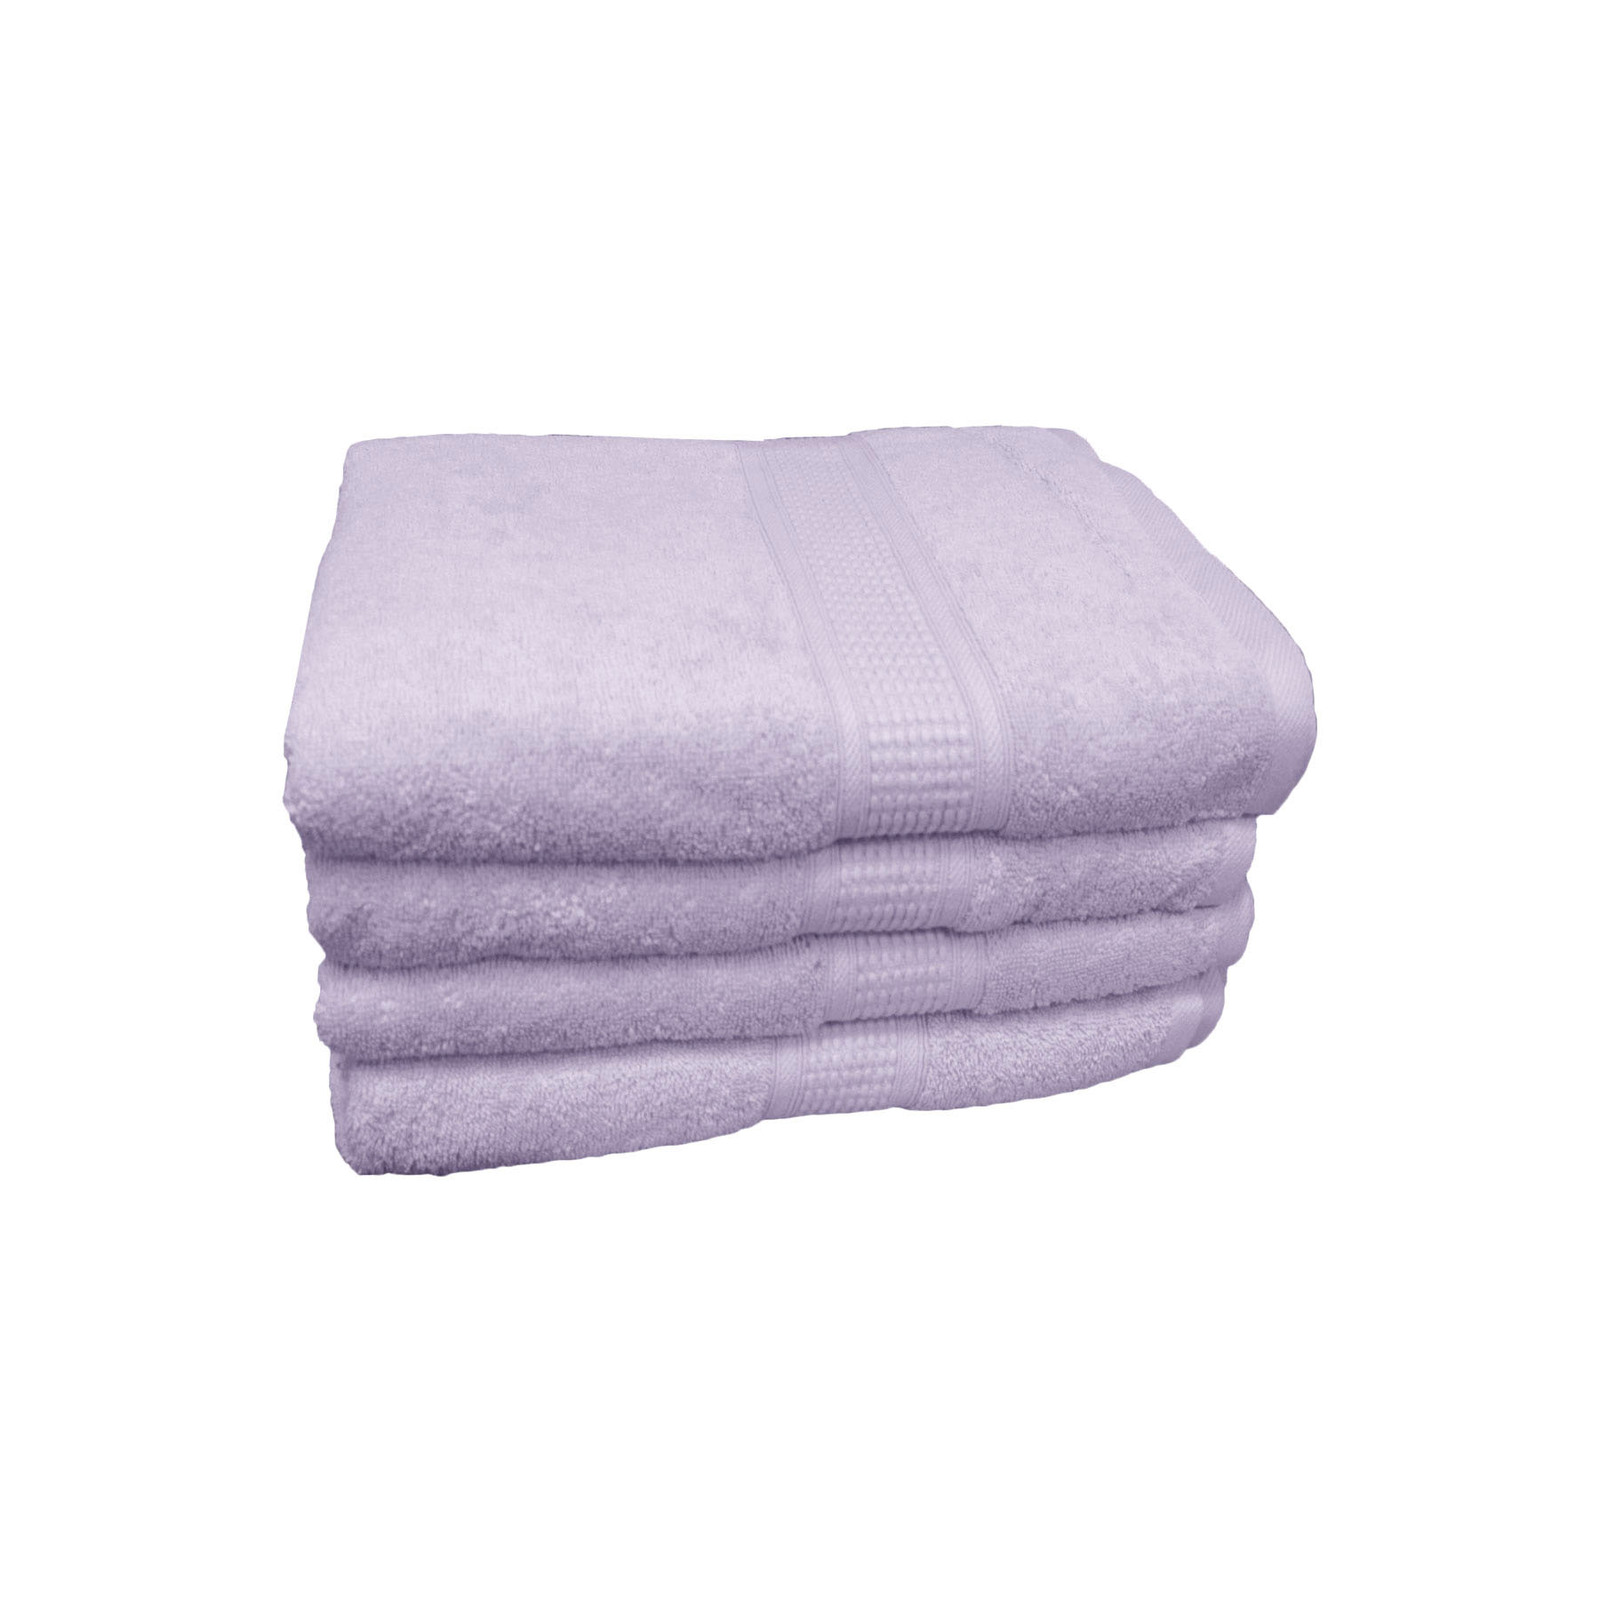 500gsm Superior Softness Combed Cotton Bath Towels 70 x 140cm Lavender 70 x 140cm